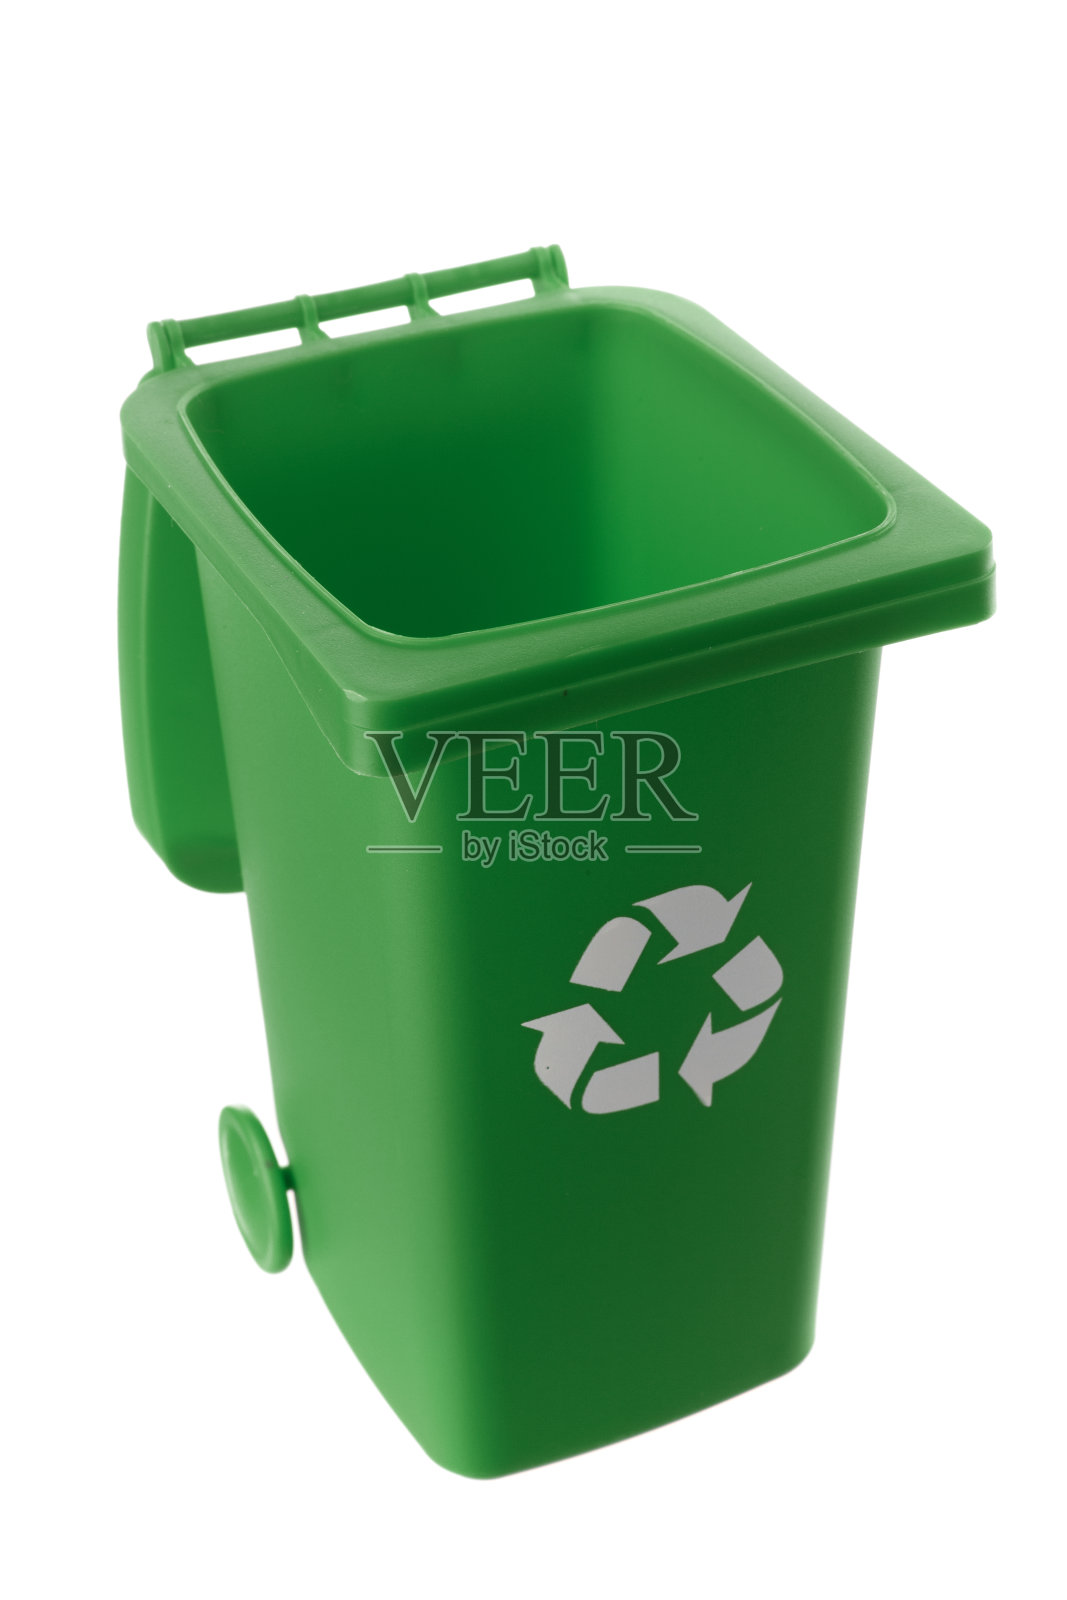 白色背景上孤立的绿色塑料垃圾桶照片摄影图片